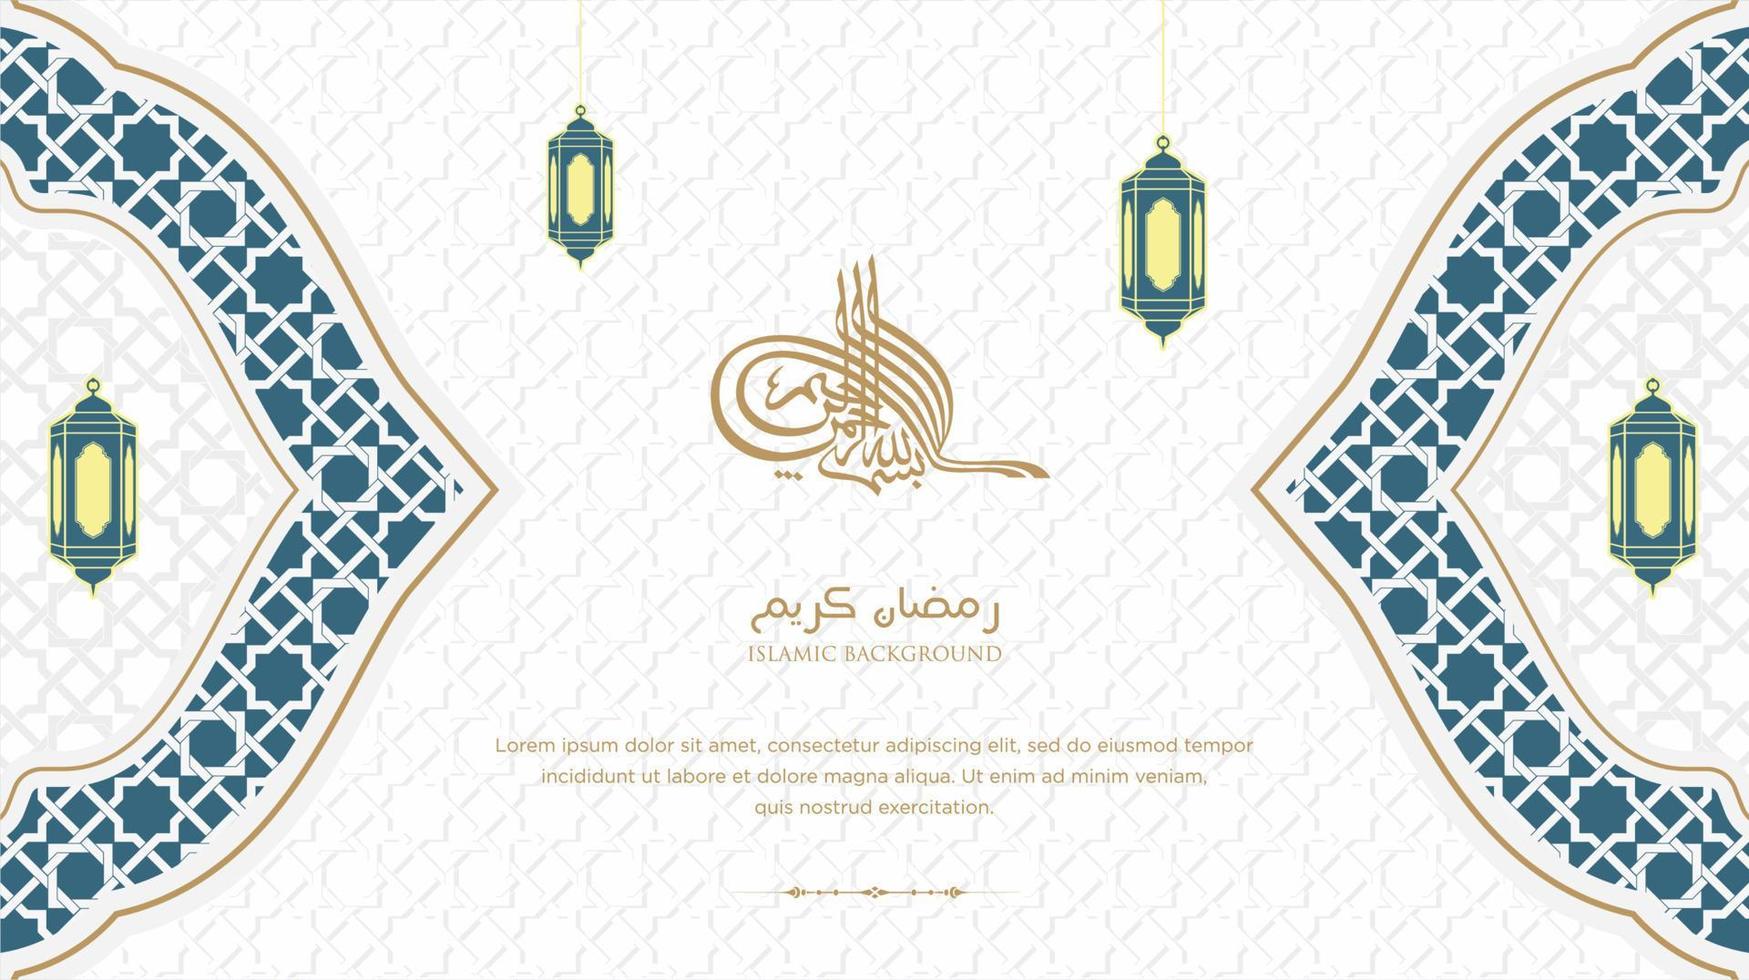 ramadan kareem arabisch islamischer eleganter weißer und goldener luxusverzierungshintergrund mit arabischem muster und dekorativem verzierungsbogenrahmen vektor